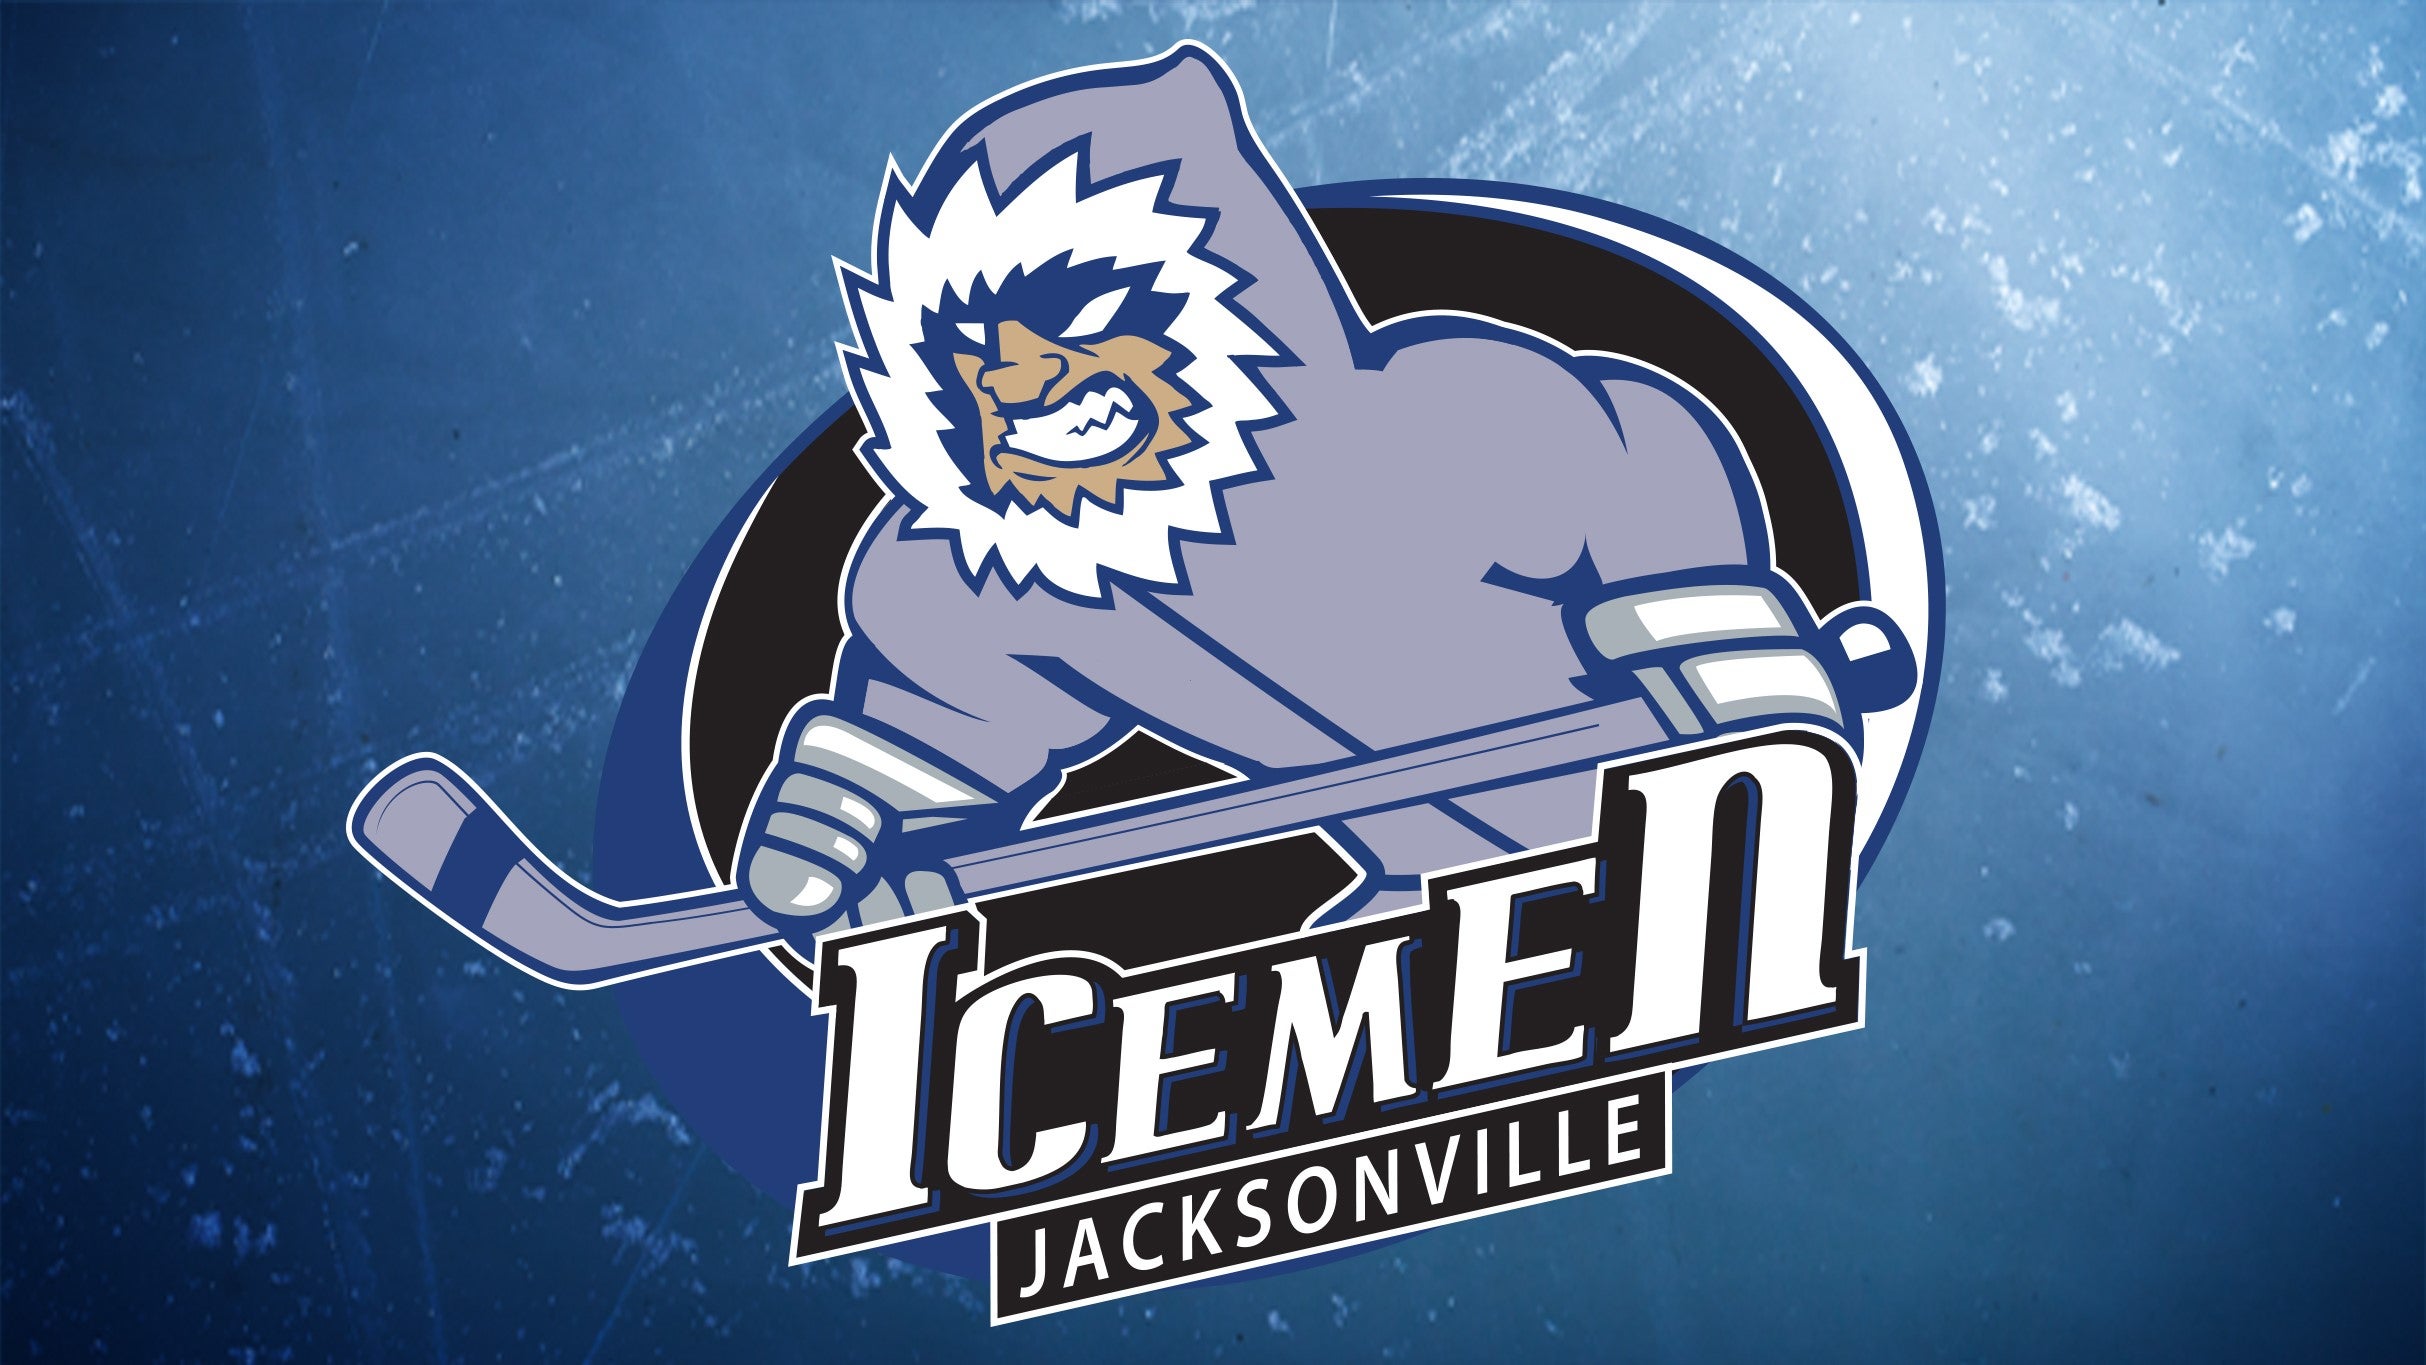 Jacksonville Icemen vs. Orlando Solar Bears in Jacksonville promo photo for Official Platinum presale offer code